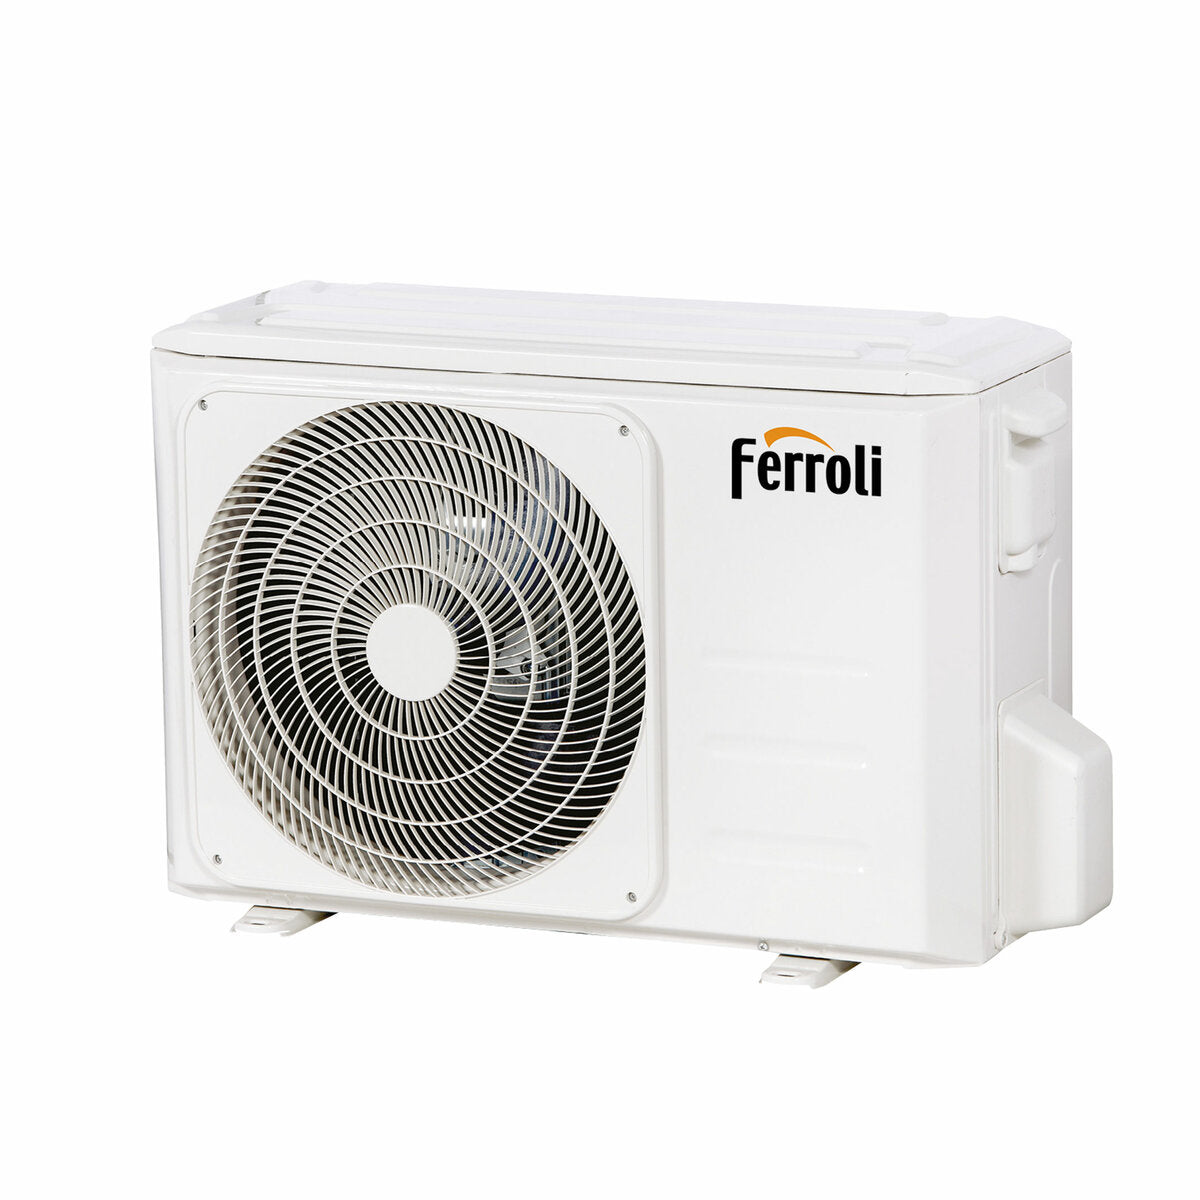 Ferroli Giada dual split air conditioner 9000+18000 BTU inverter A+ wifi outdoor unit 6.2 kW